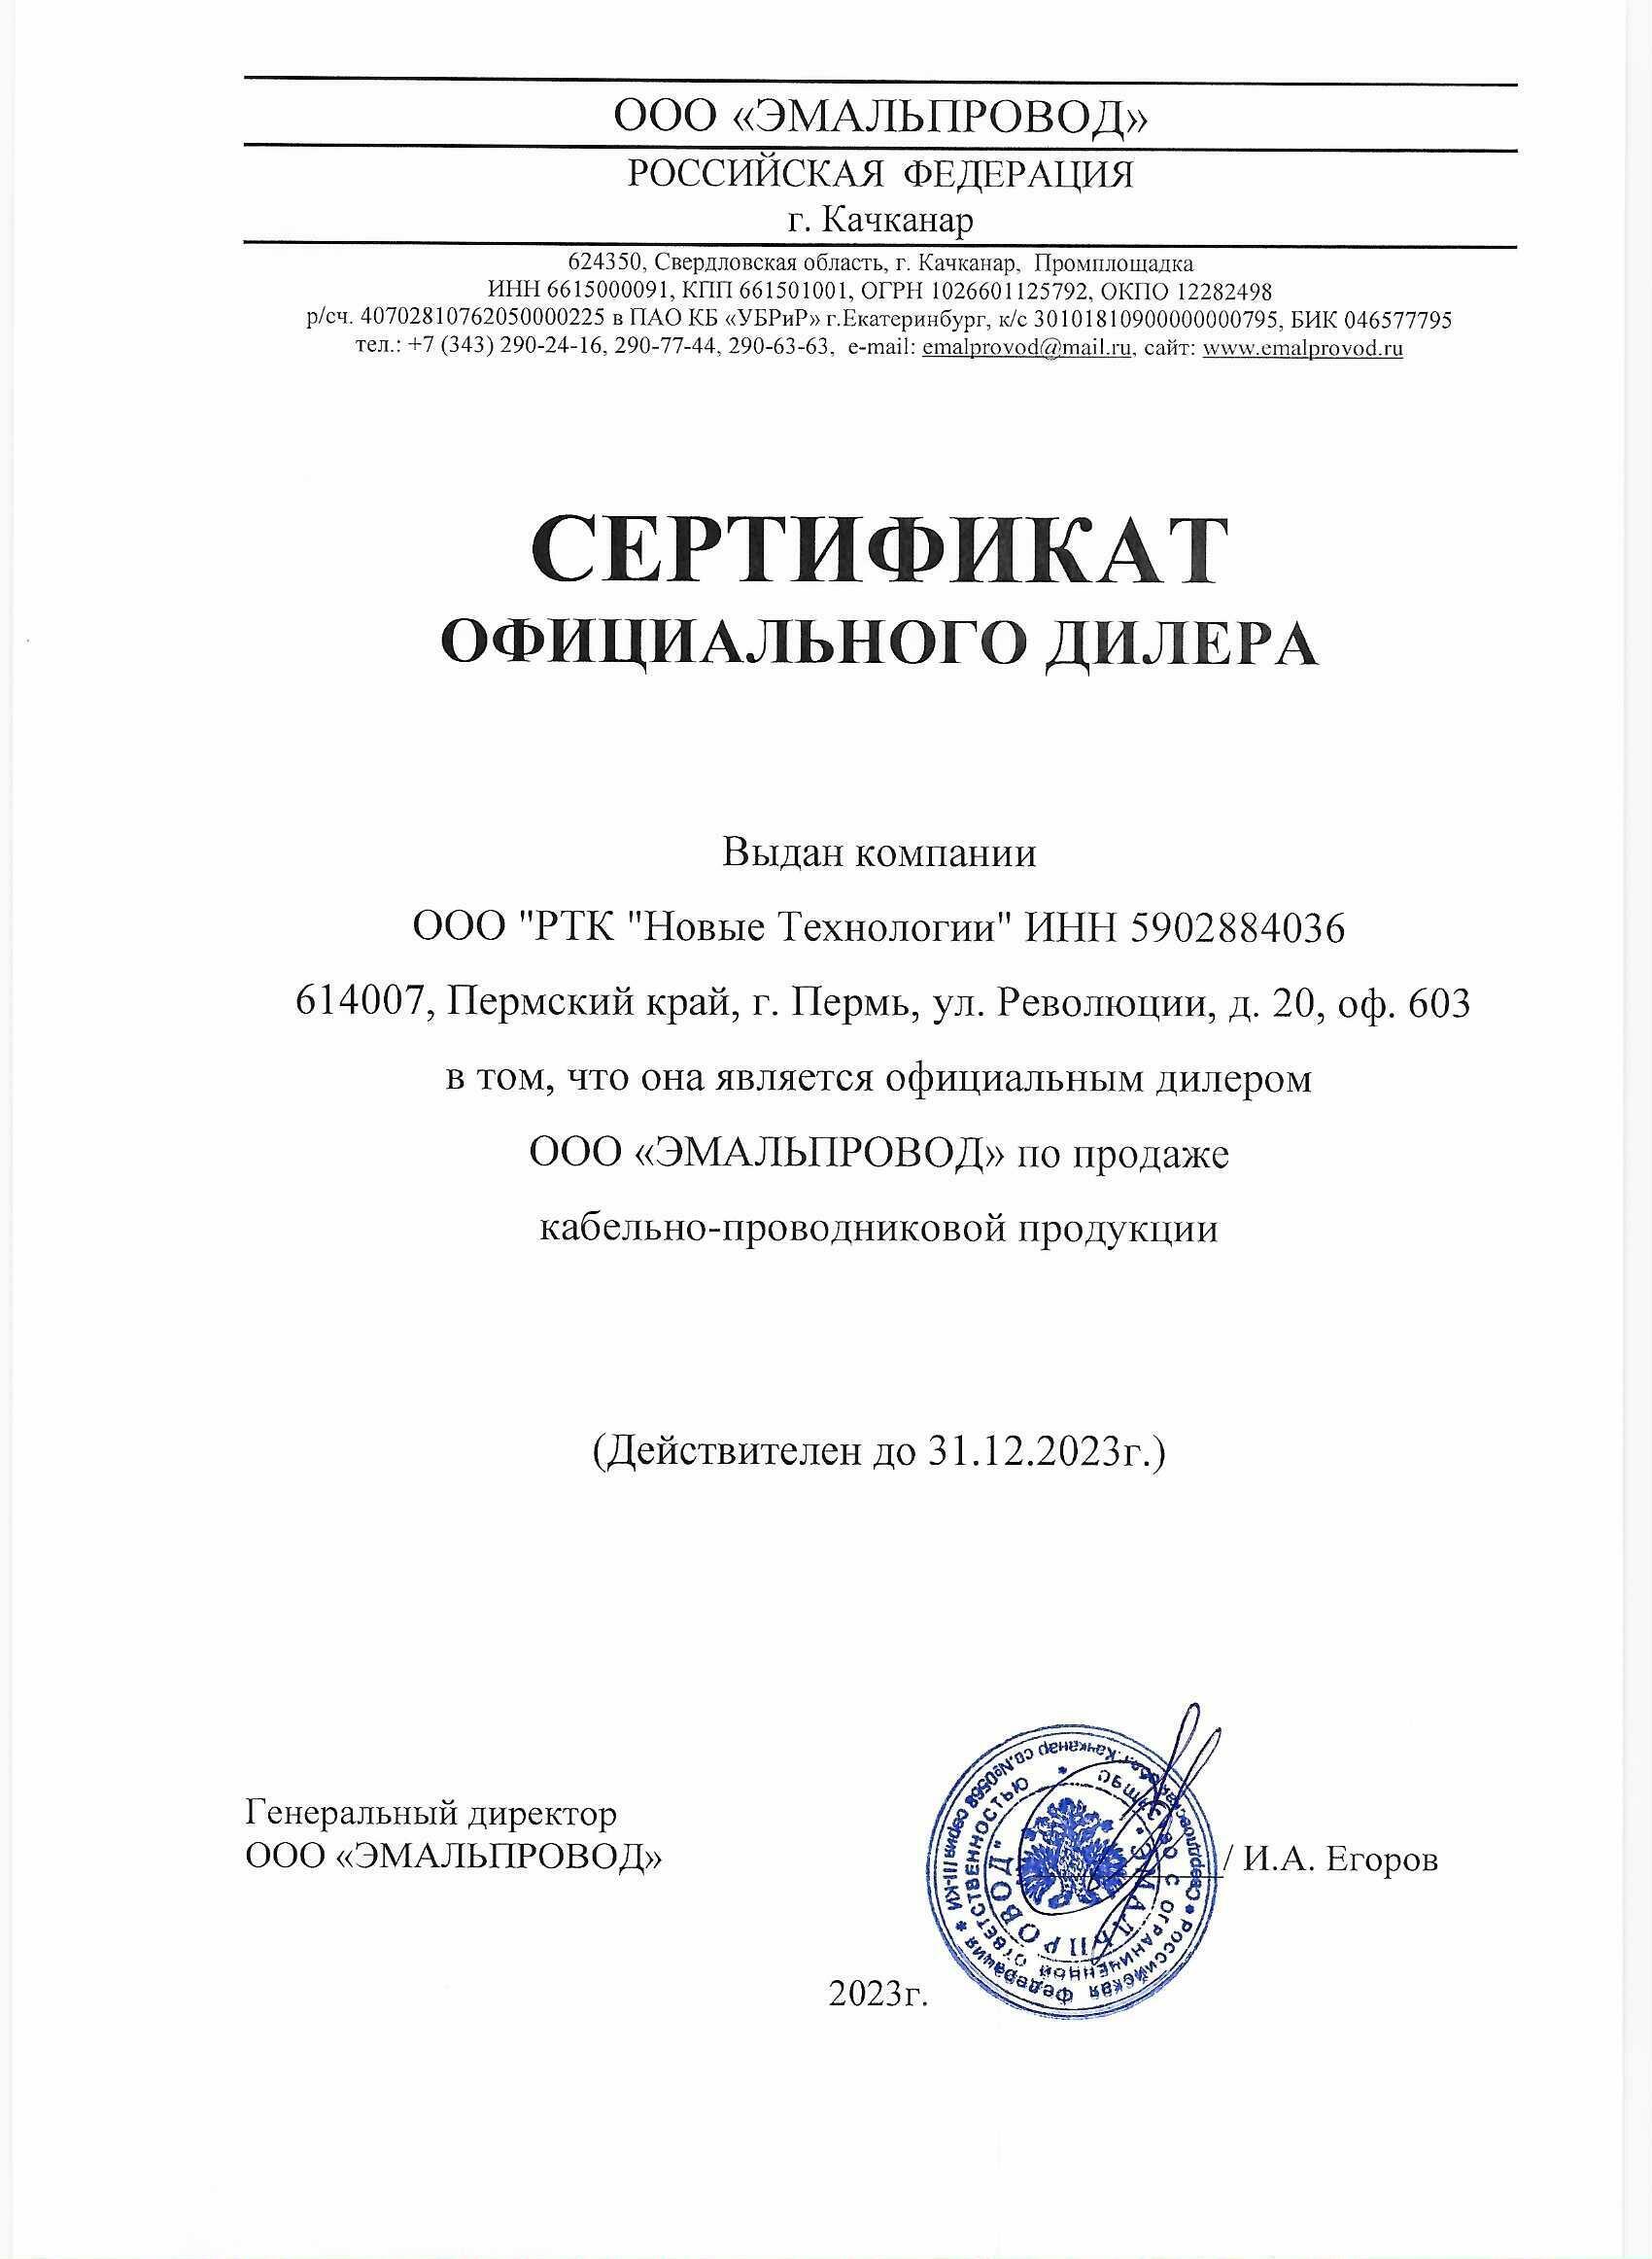 Сертификат ООО «ЭМАЛЬПРОВОД»